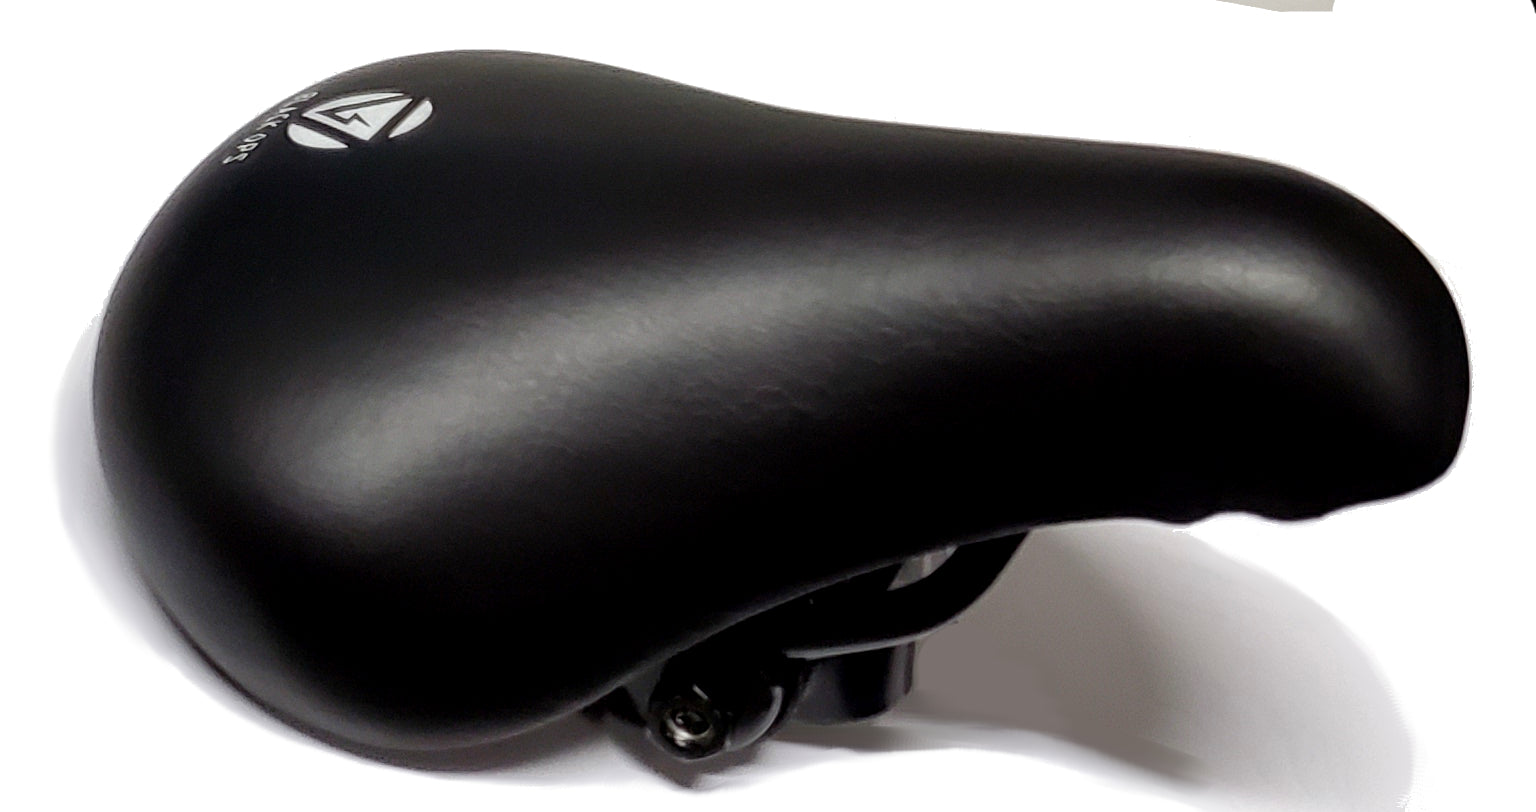 BlackOps BMX Components Stubby Saddle - BMX Railed Seat w/ guts - Black